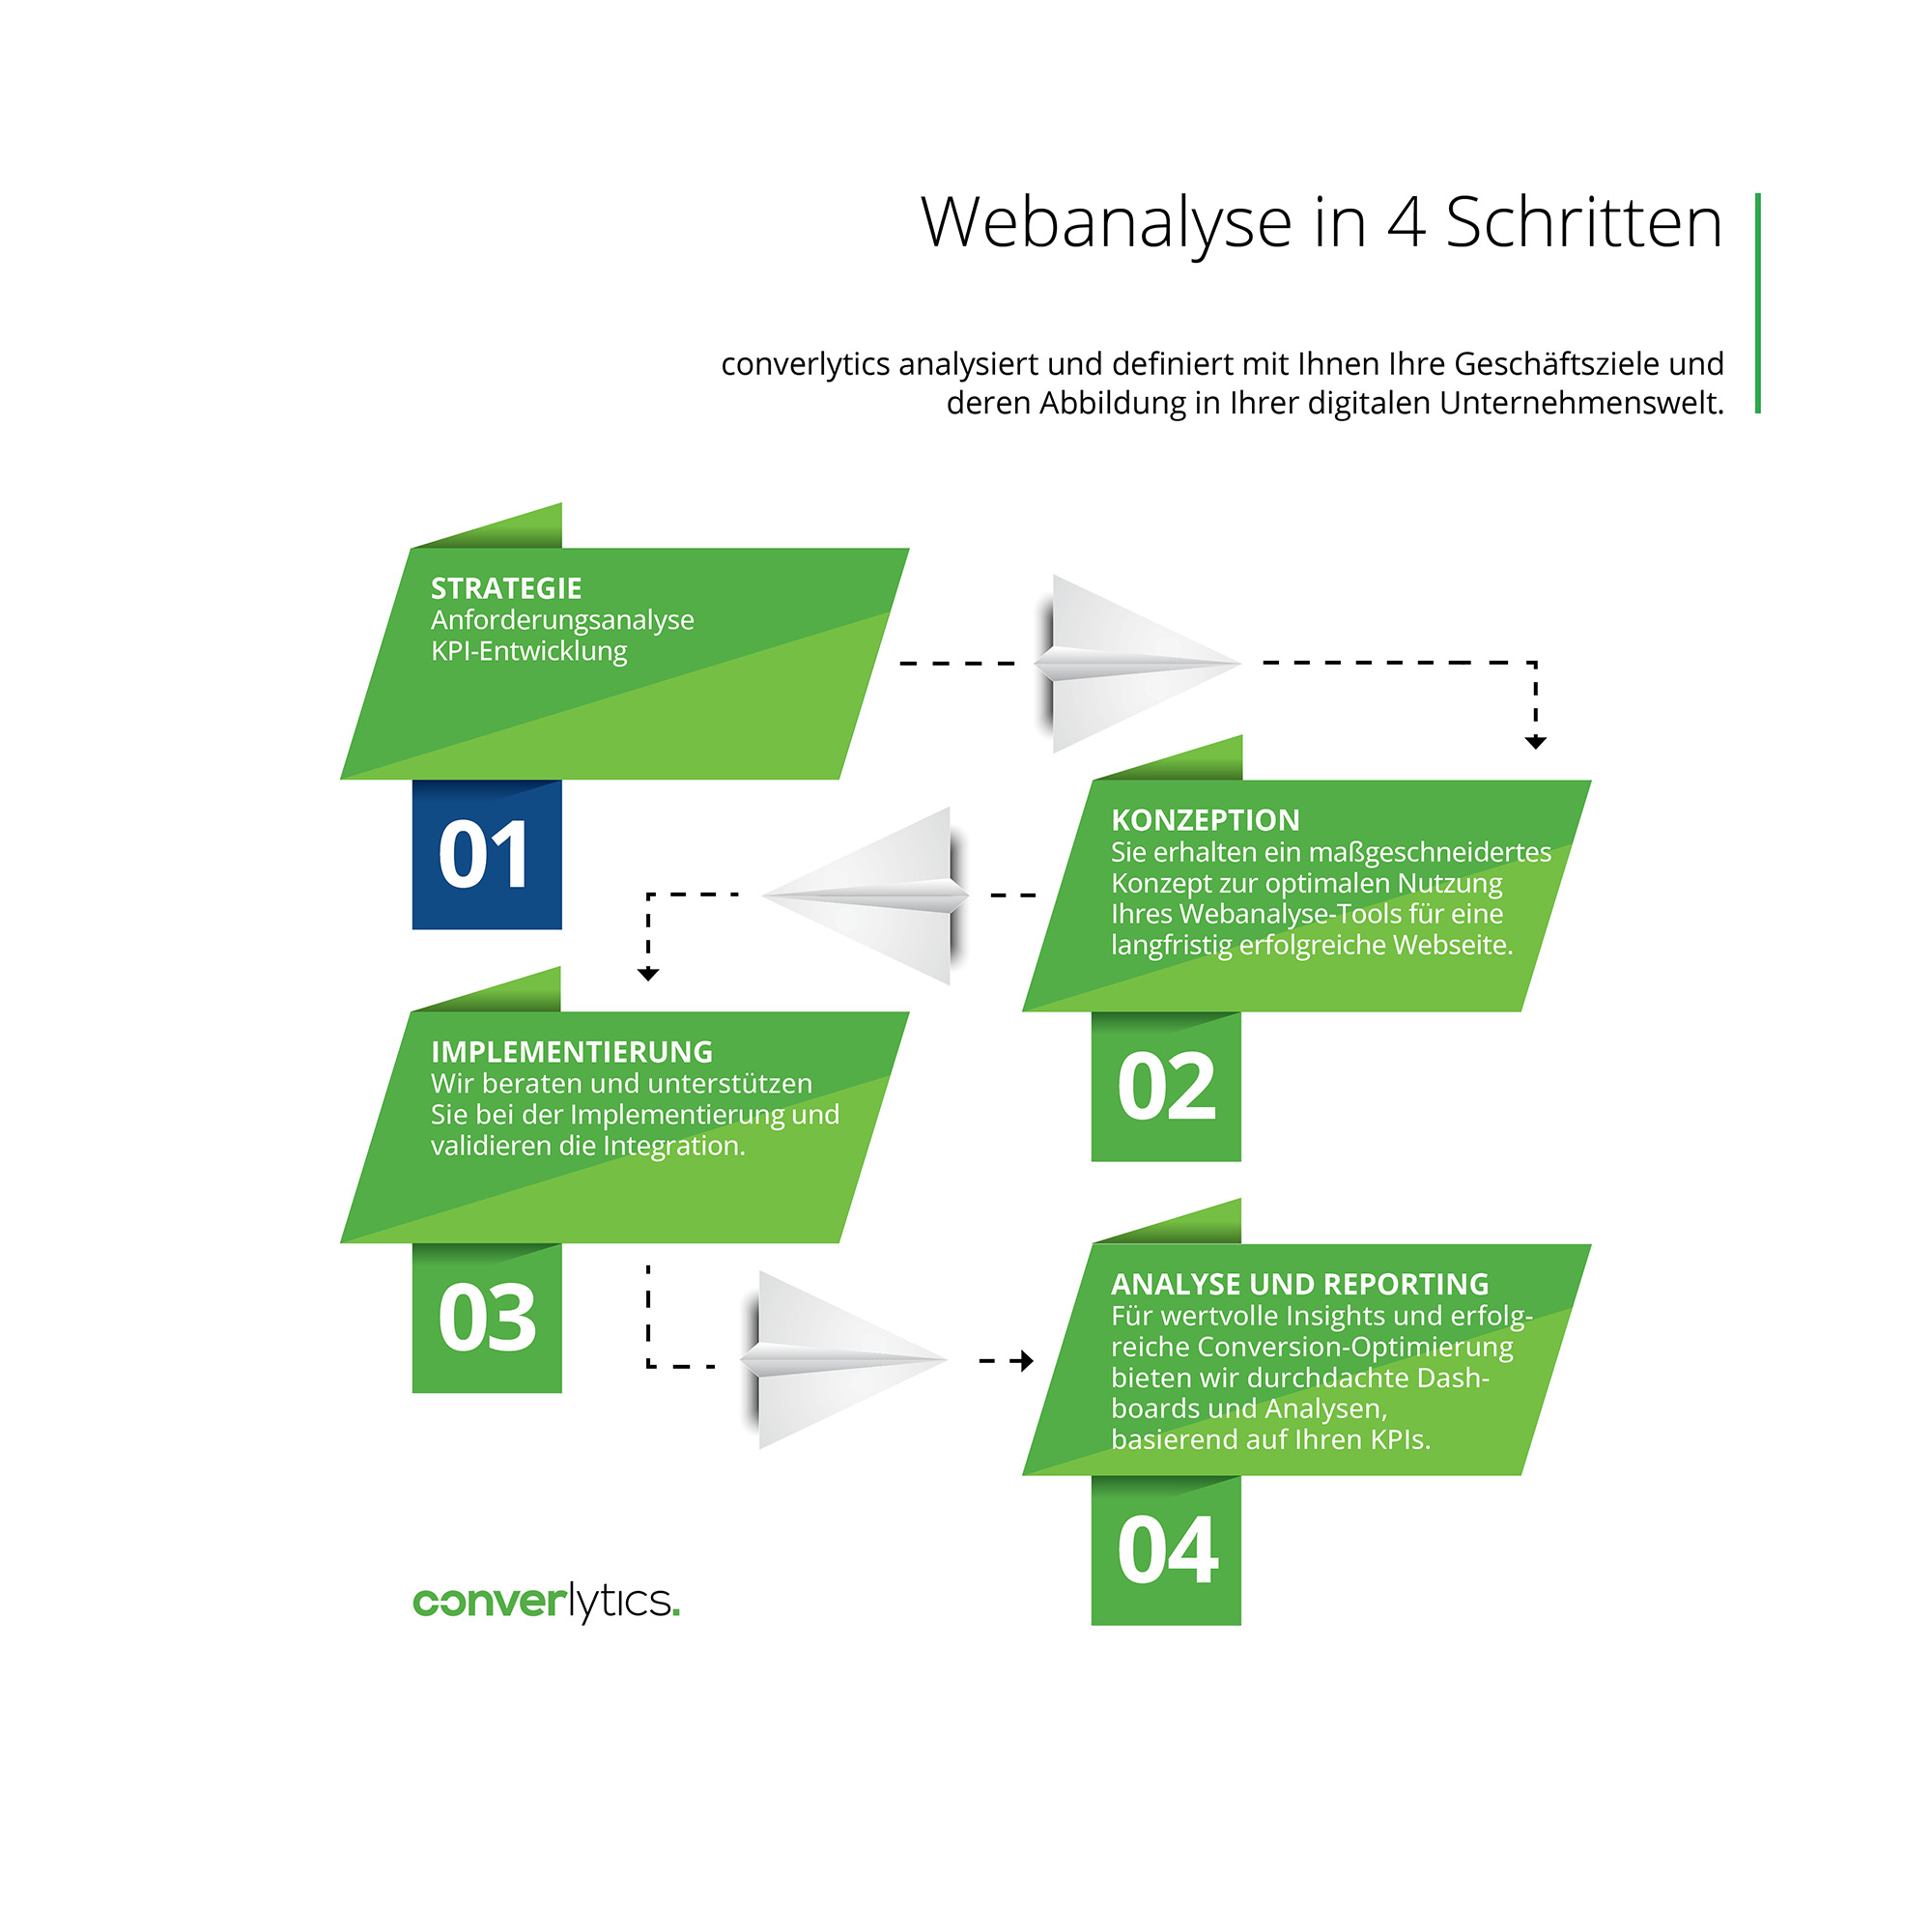 Schematische Darstellung der einzelnen Prozessschritte bei der Webanalyse mit converlytics.